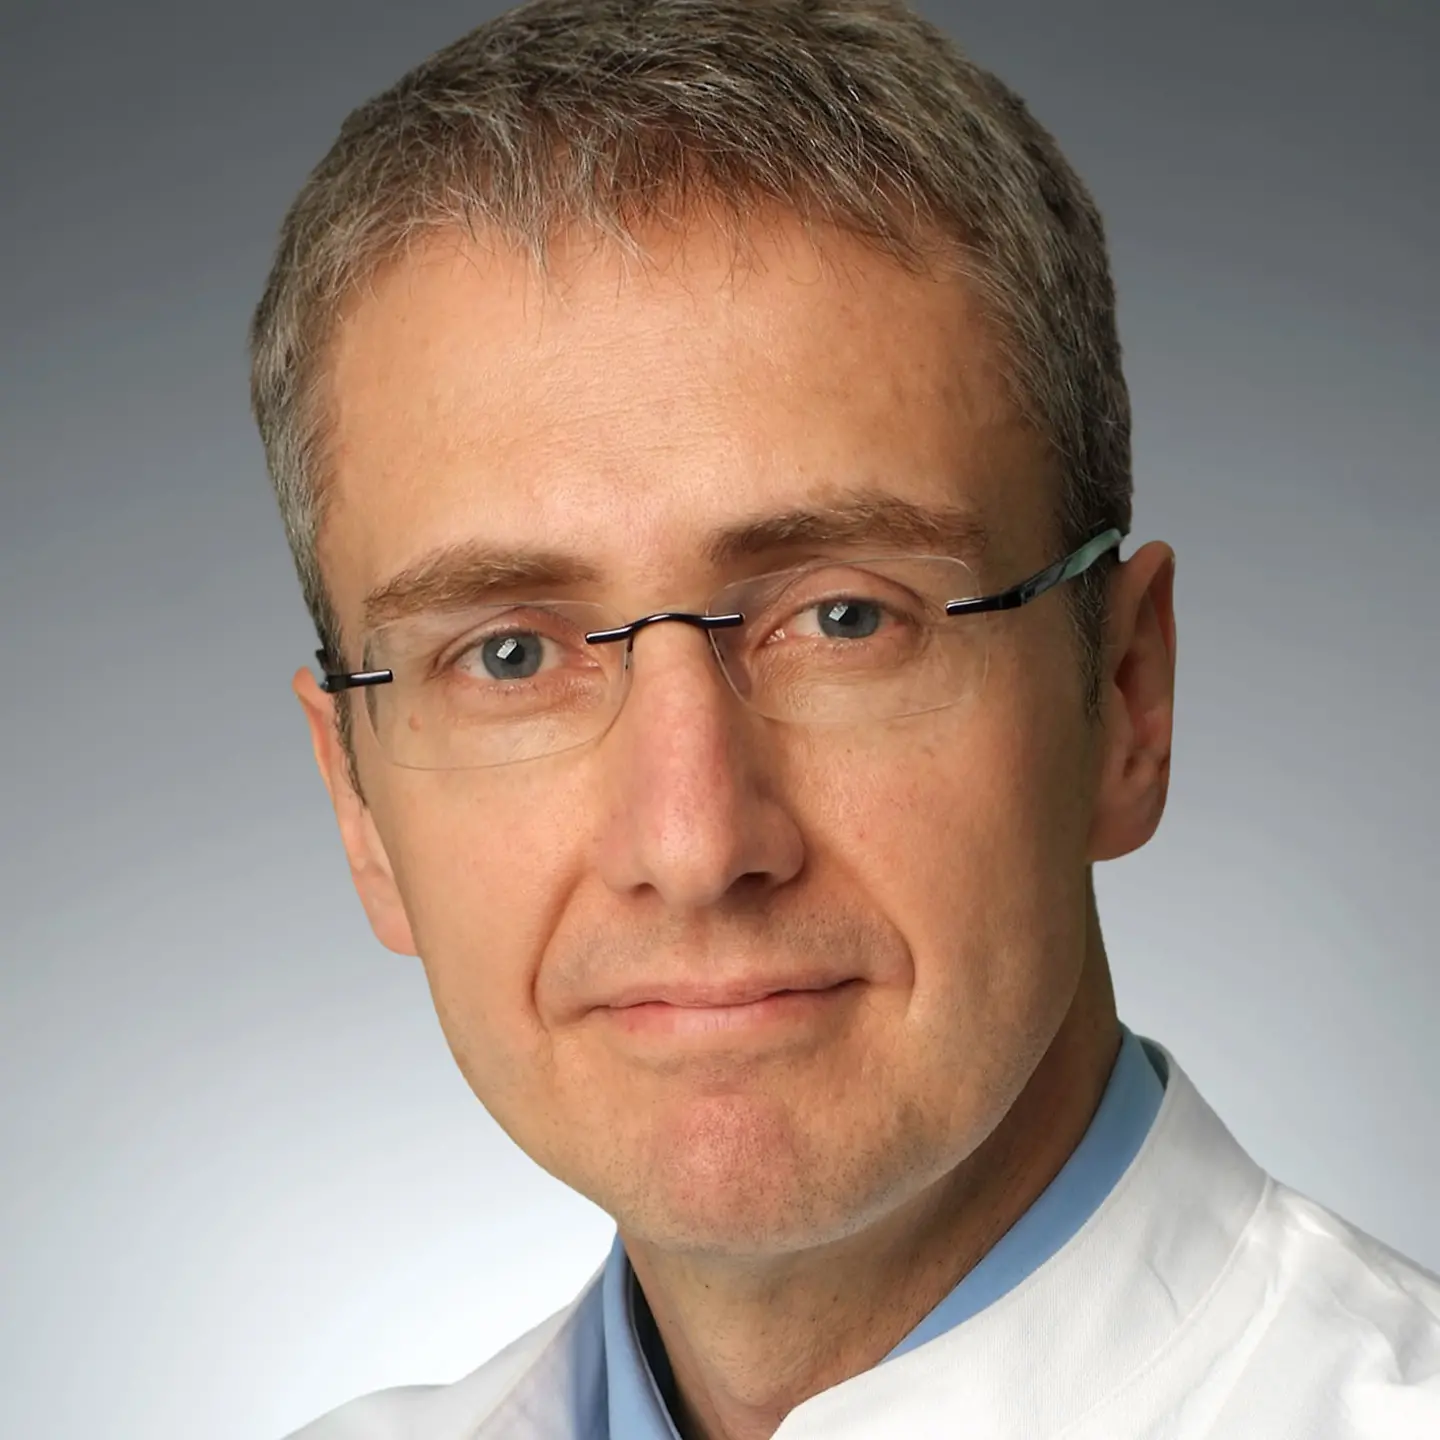 Prof. Dr. med. Jürgen Wolf ist Ärztlicher Leiter des Centrums für Integrierter Onkologie Köln.